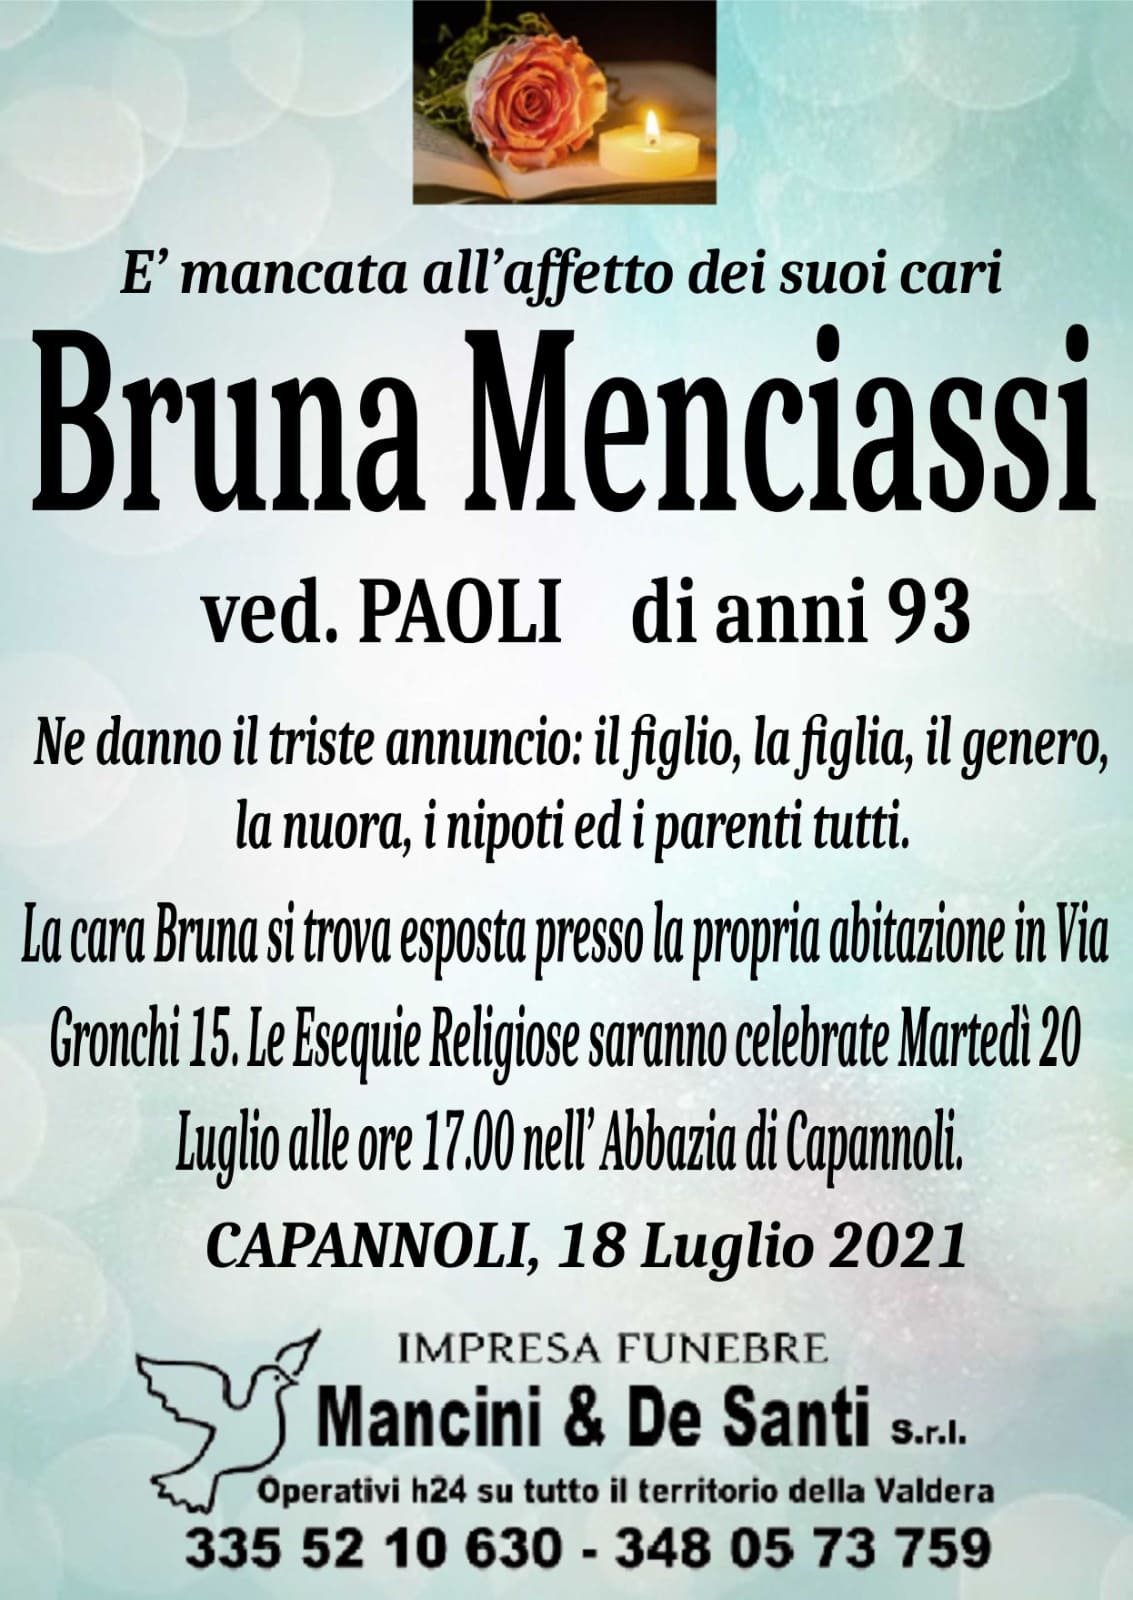 necrologio Bruna Menciassi - vedova Paoli - funerale Capannoli - martedì 20 luglio - ore 17.00 - Abbazia Capannoli